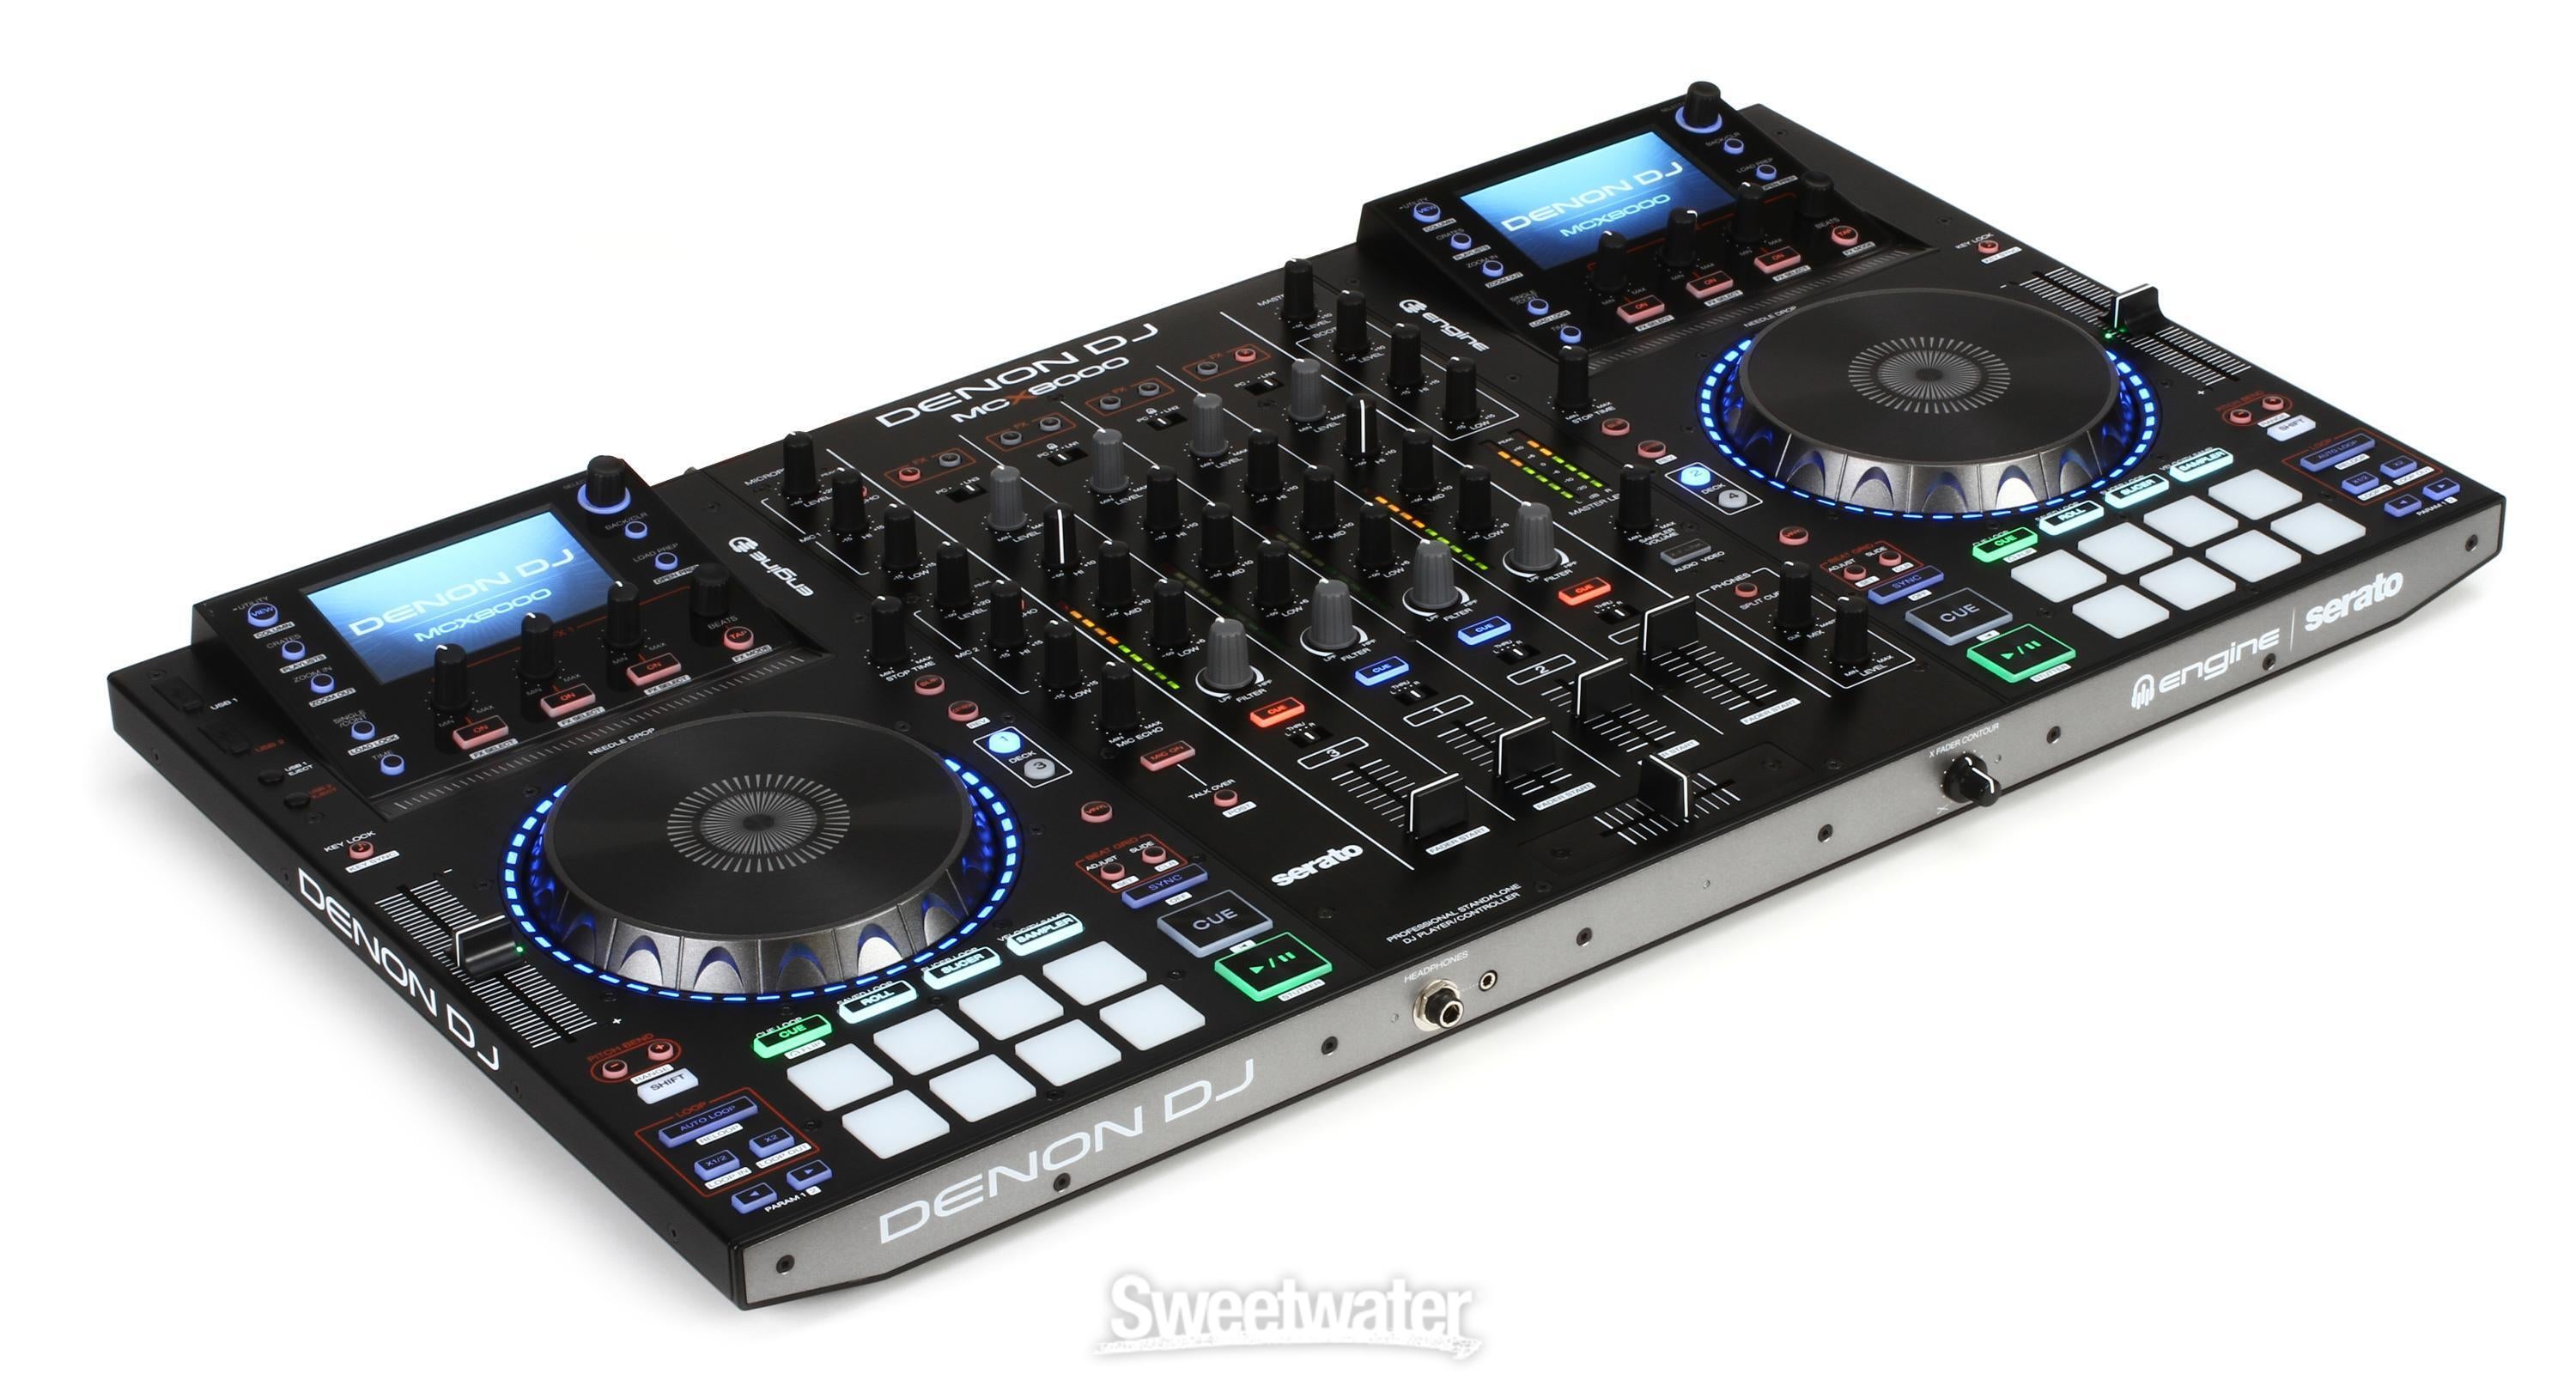 Denon DJ MCX8000 Stand alone DJ System and Serato Controller